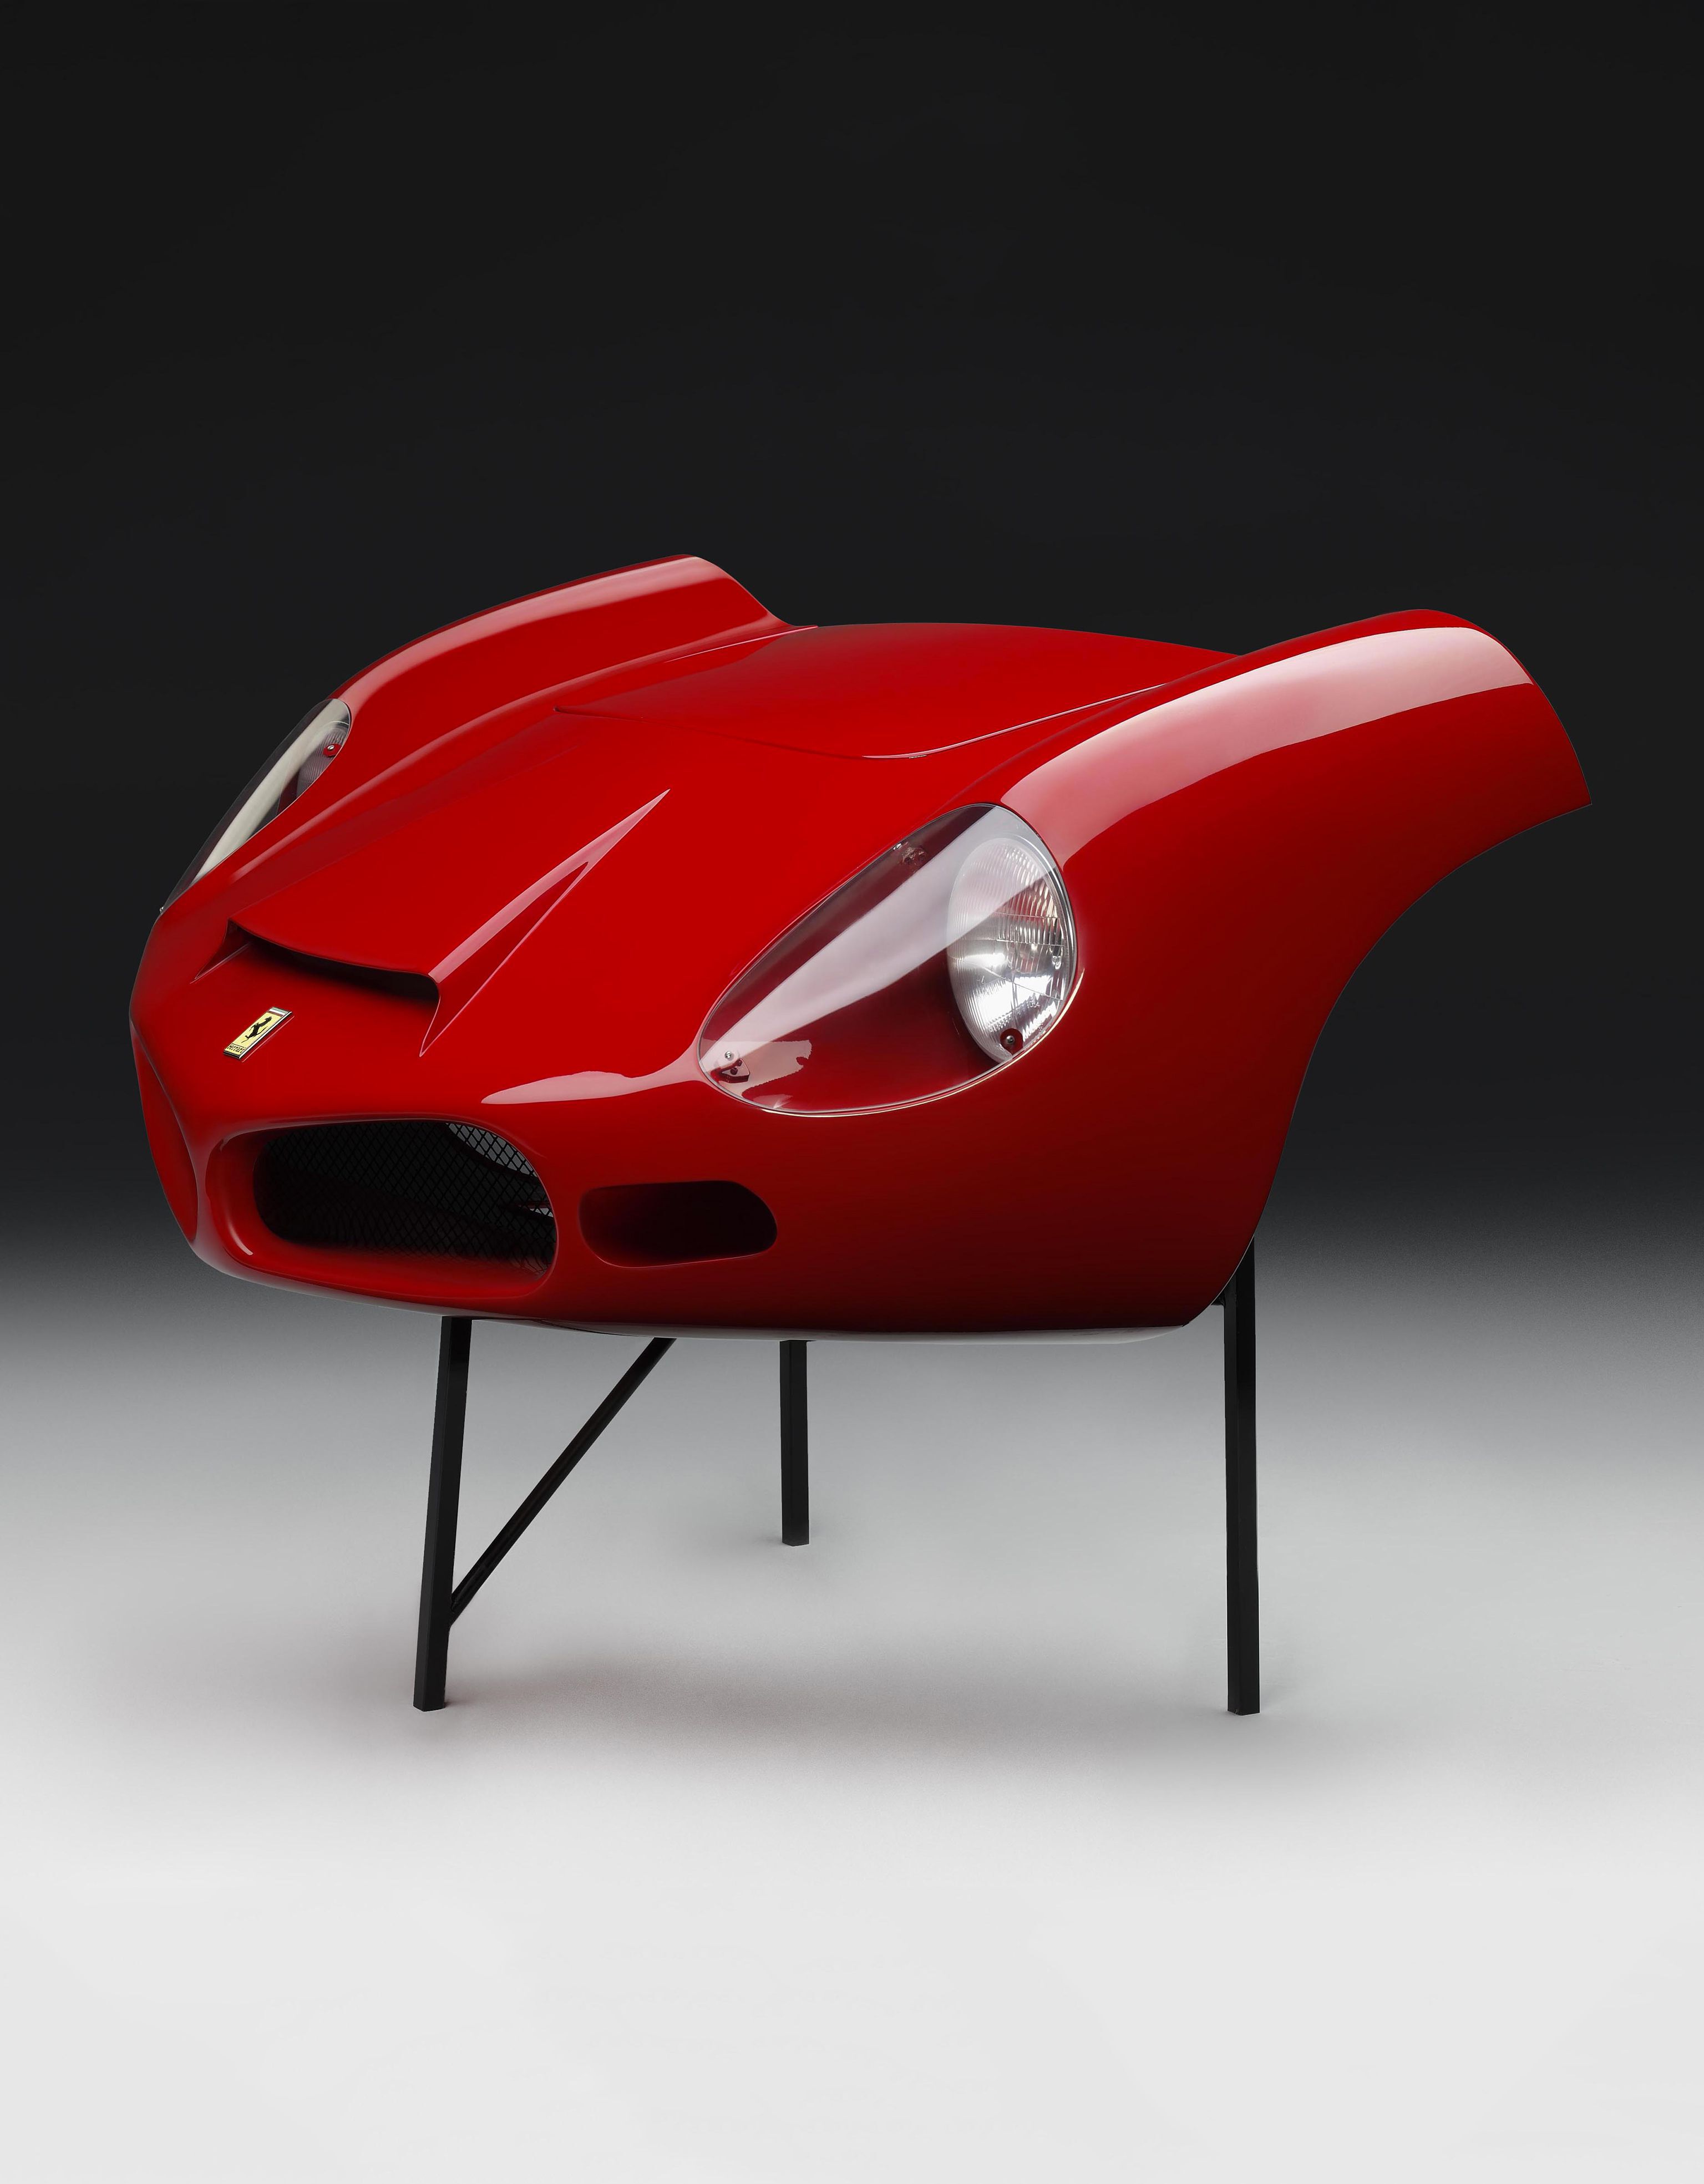 Ferrari Morro del Ferrari 268 SP de 1962 Rojo 01756f